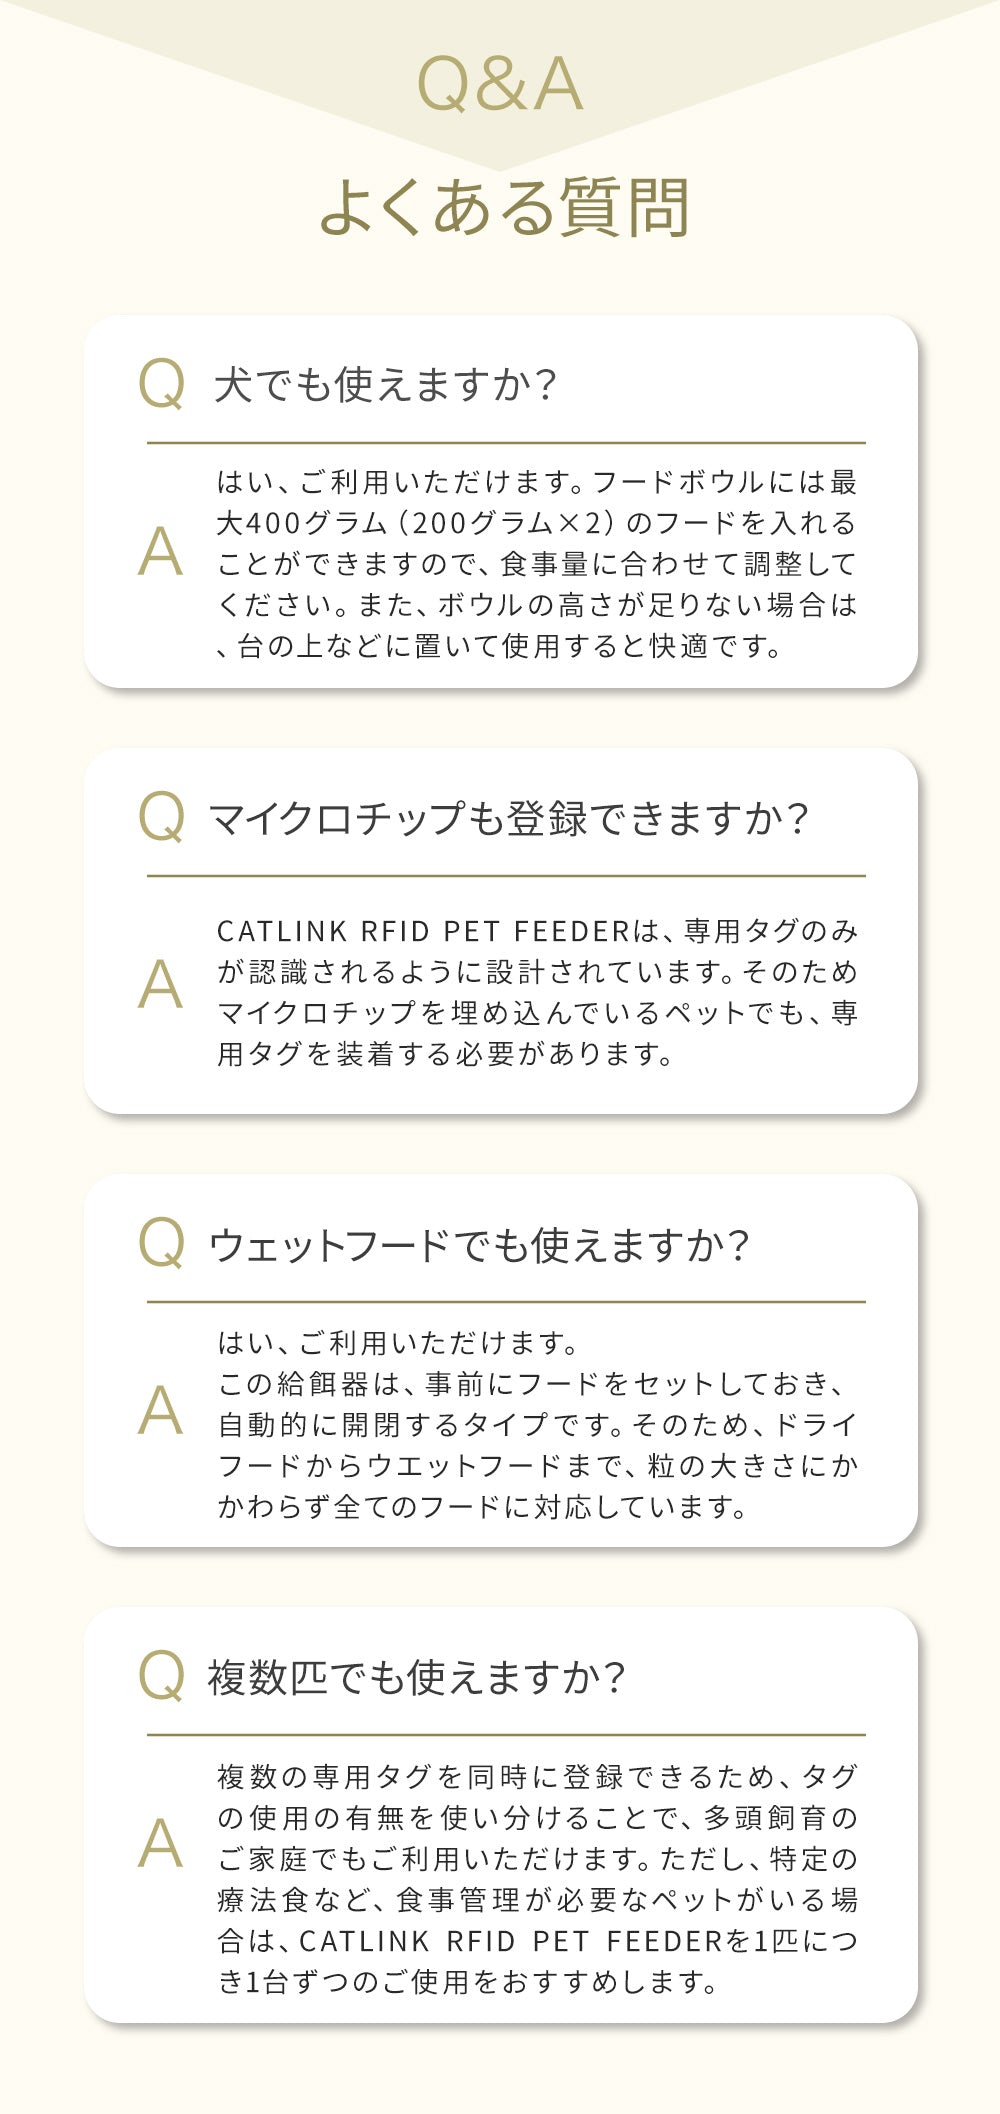 横取り防止自動給餌器 CATLINK RFID Pet Feeder
療法食 食べ過ぎ 自動給水器 水飲み 循環 犬 猫 アプリ スマホ iPhone android 多頭飼い 健康管理 記録